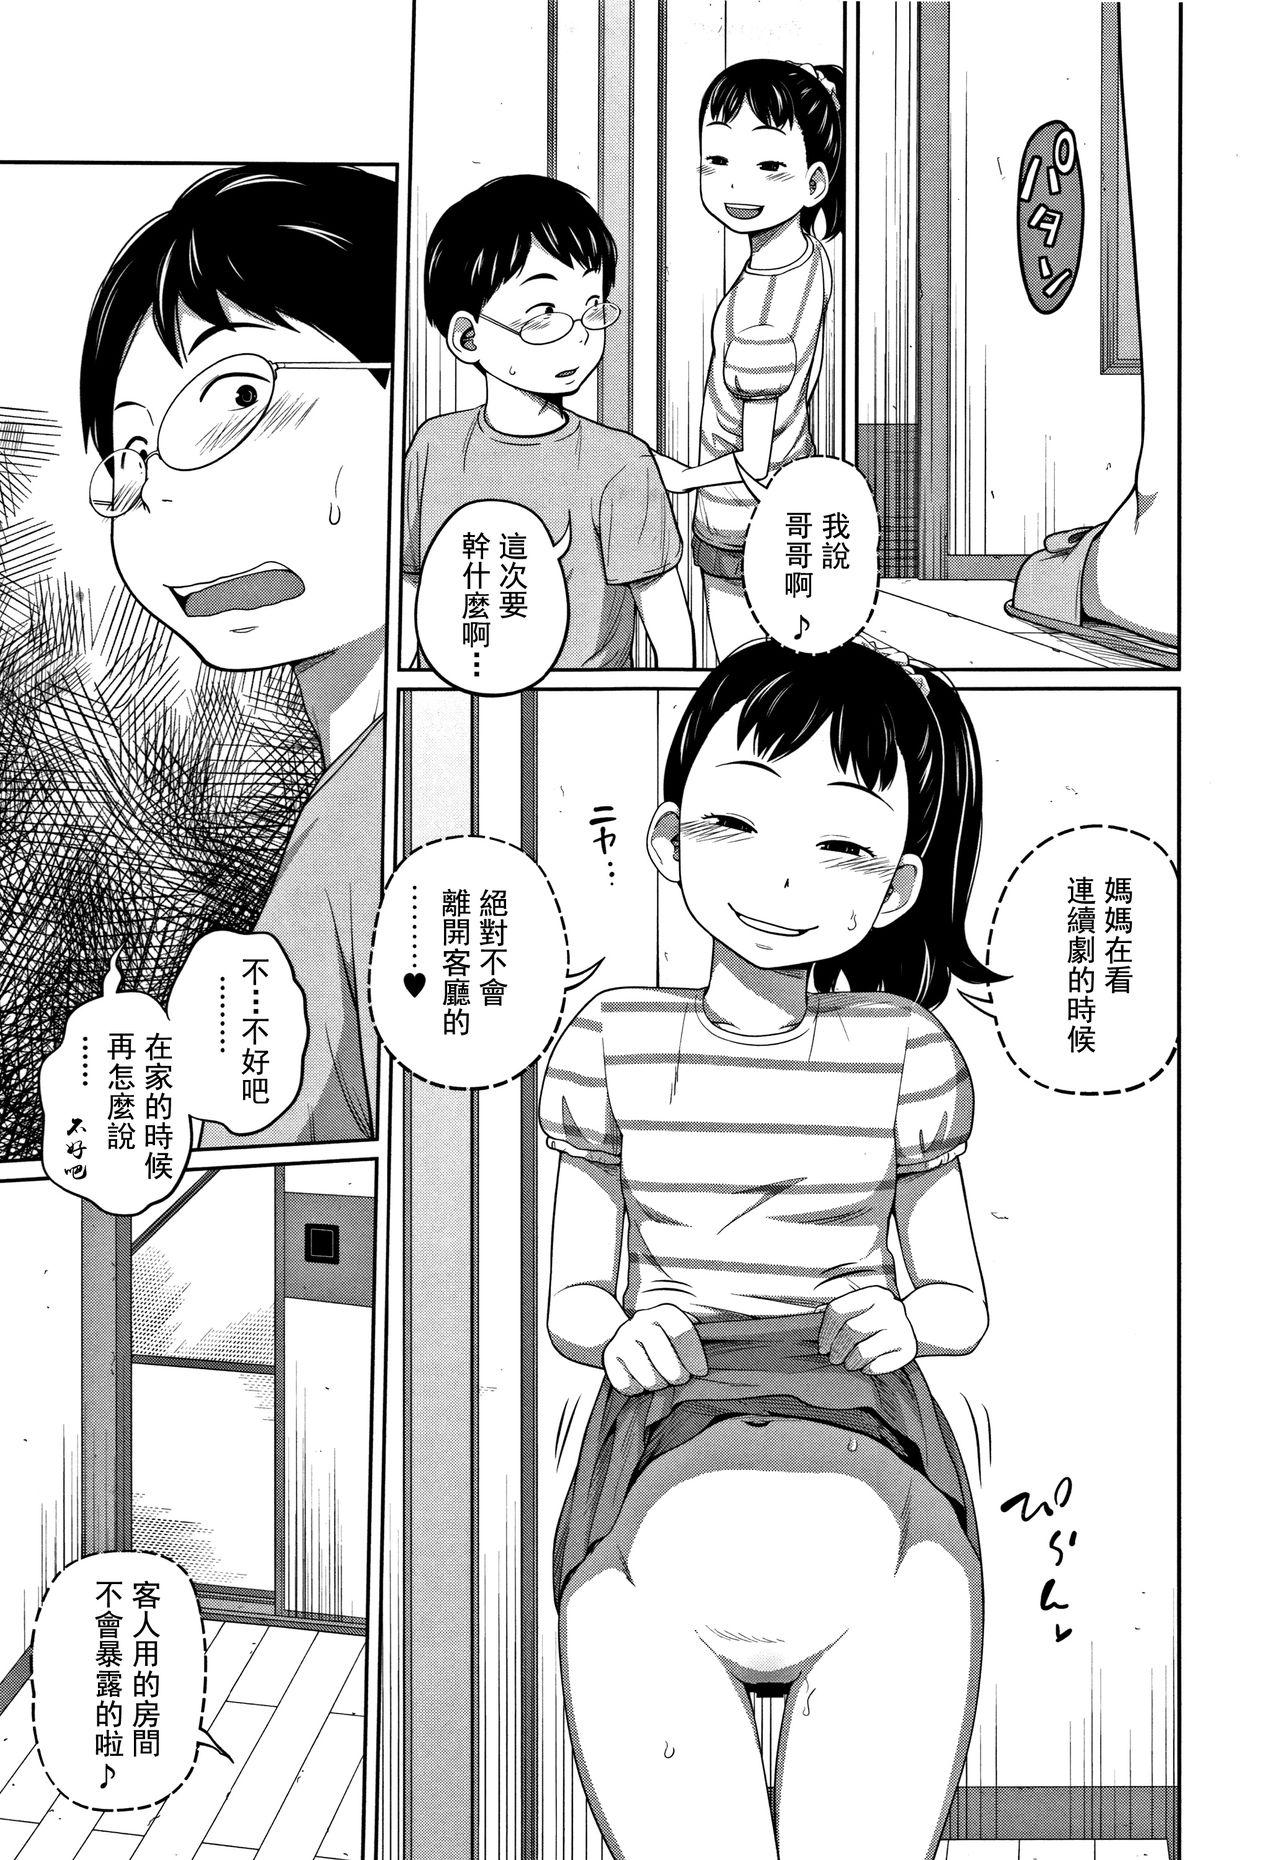 3some Kawaii Imouto to Ikenai Koto Shiteimasu! Letsdoeit - Page 10